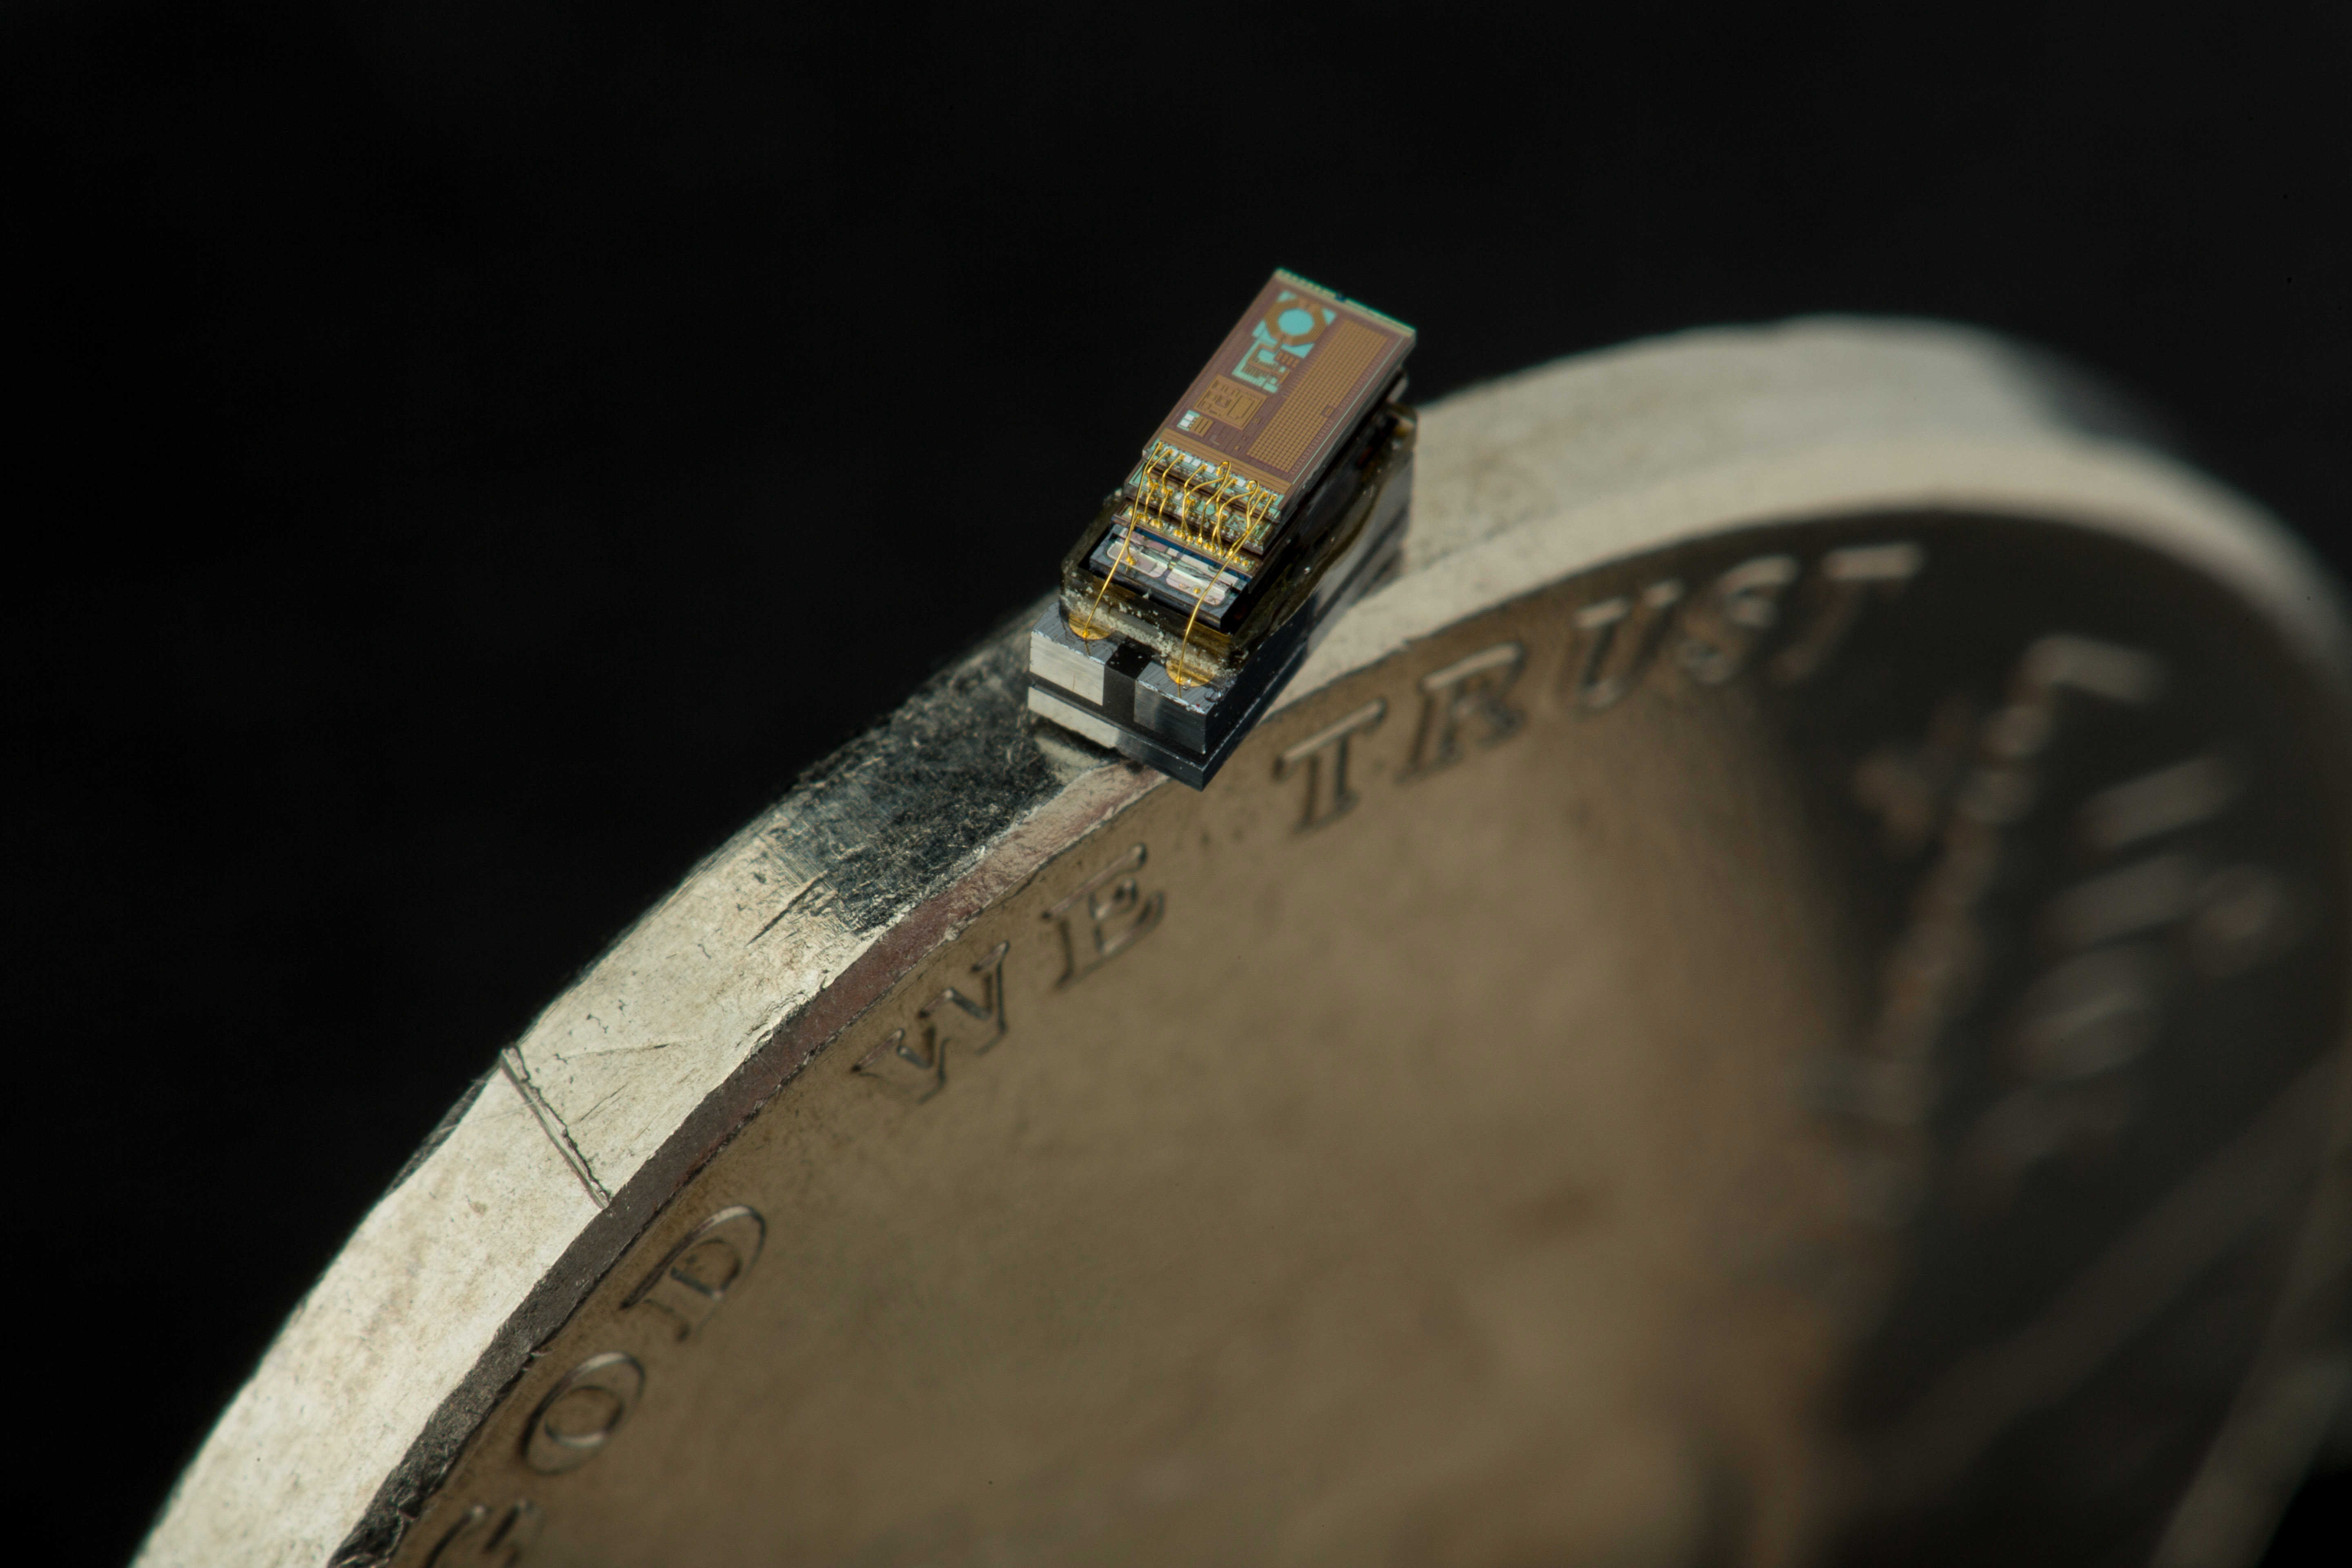 Michigan Micro Mote (M3) — World’s smallest computer in 2015